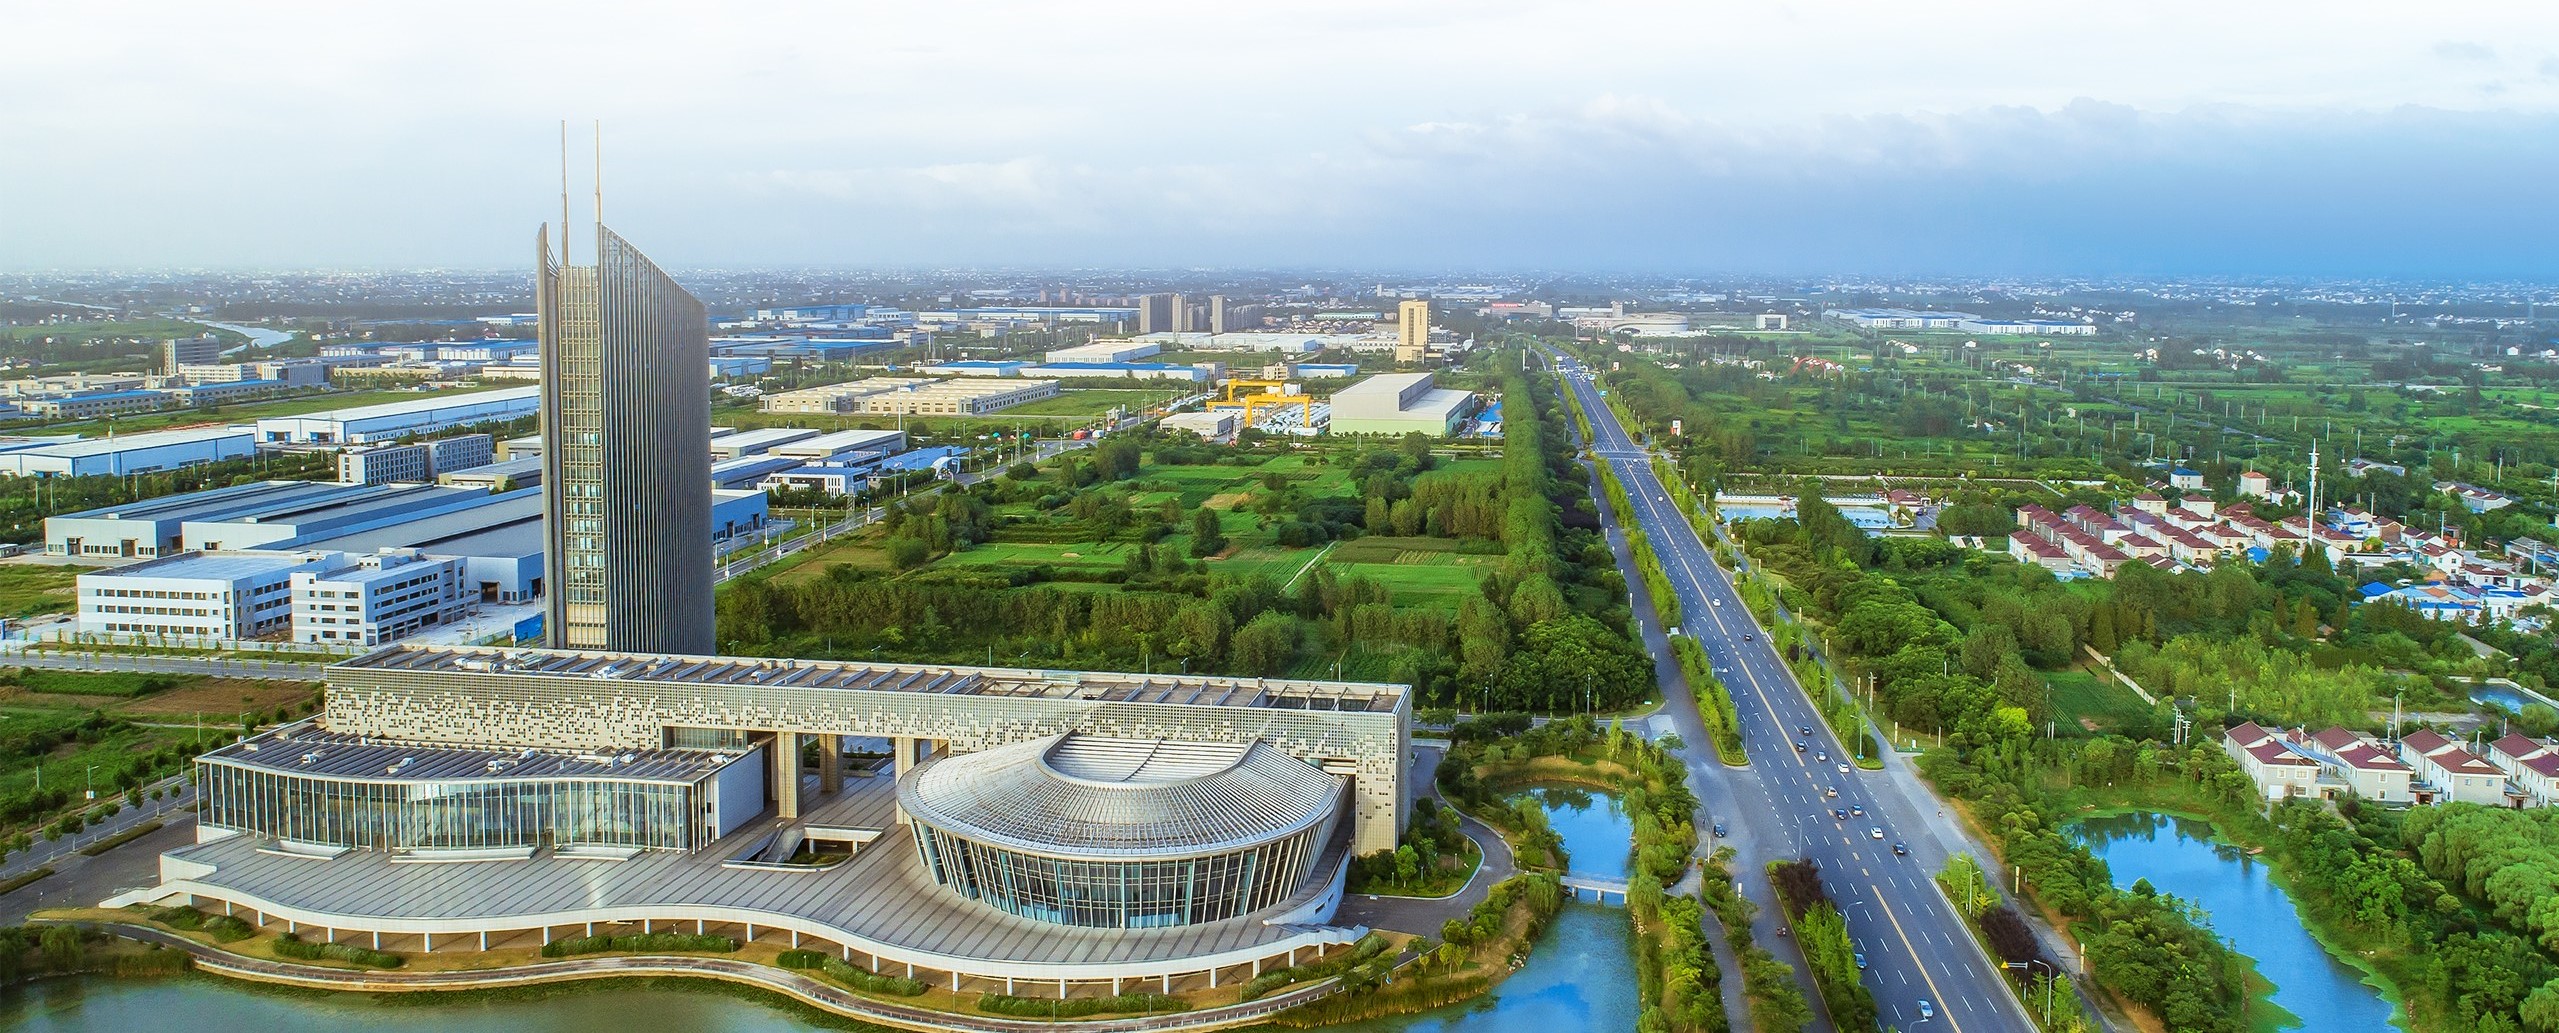 滋润上亿人世界最大调水工程成中国绿色发展新廊道 - 封面新闻